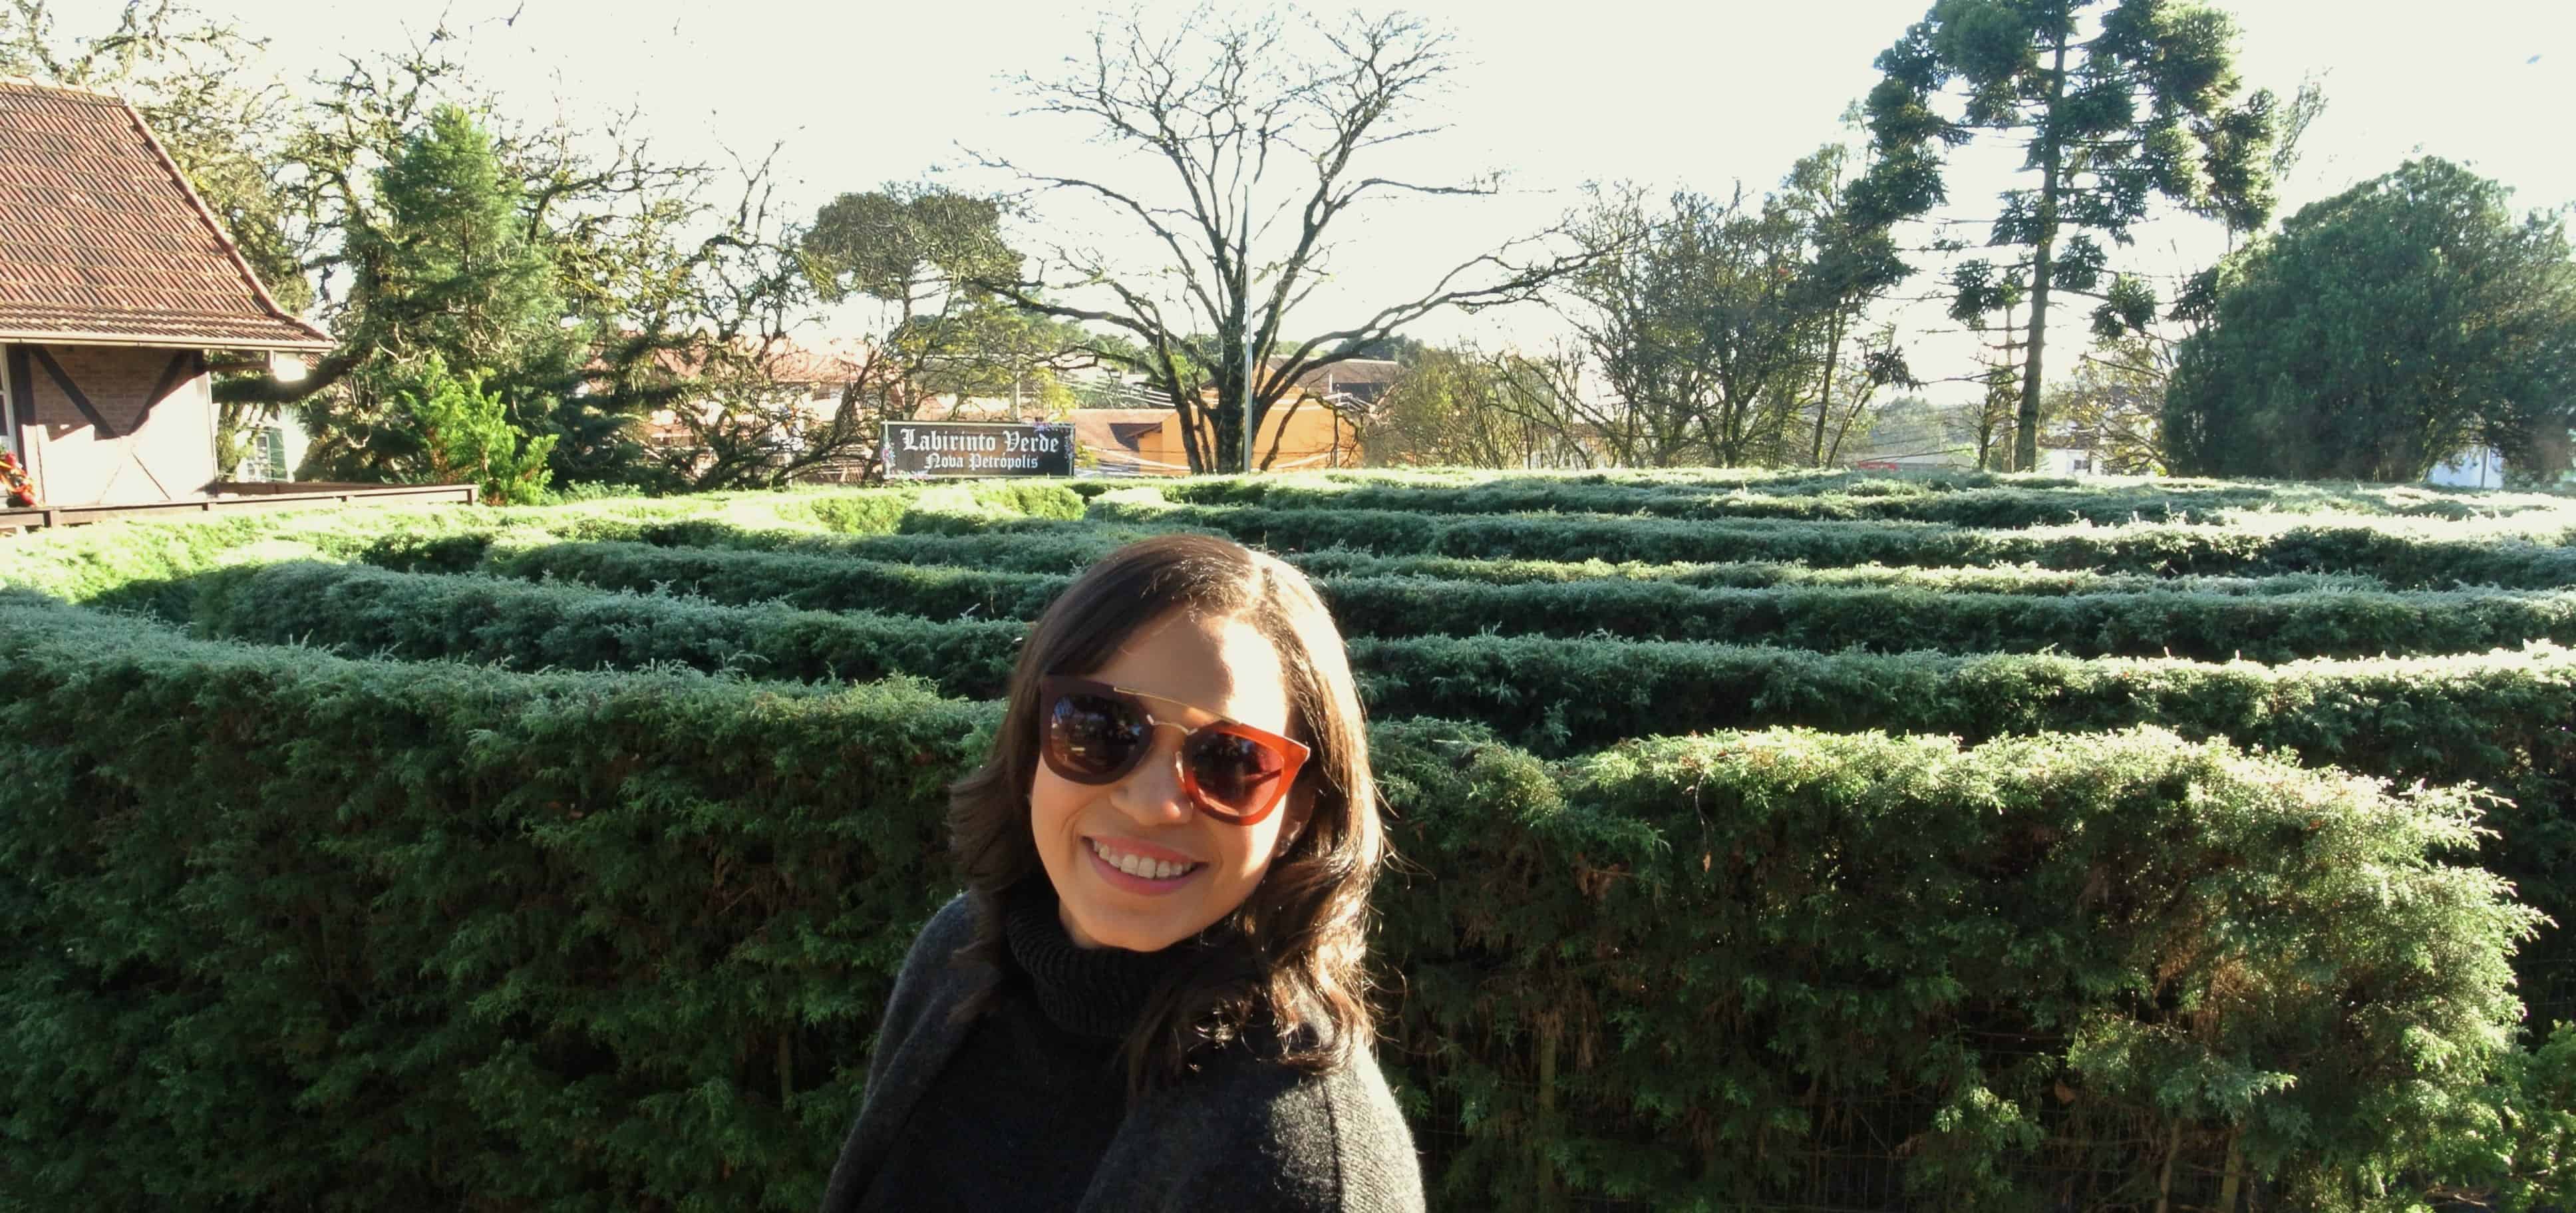 Labirinto Verde em Nova Petrópolis